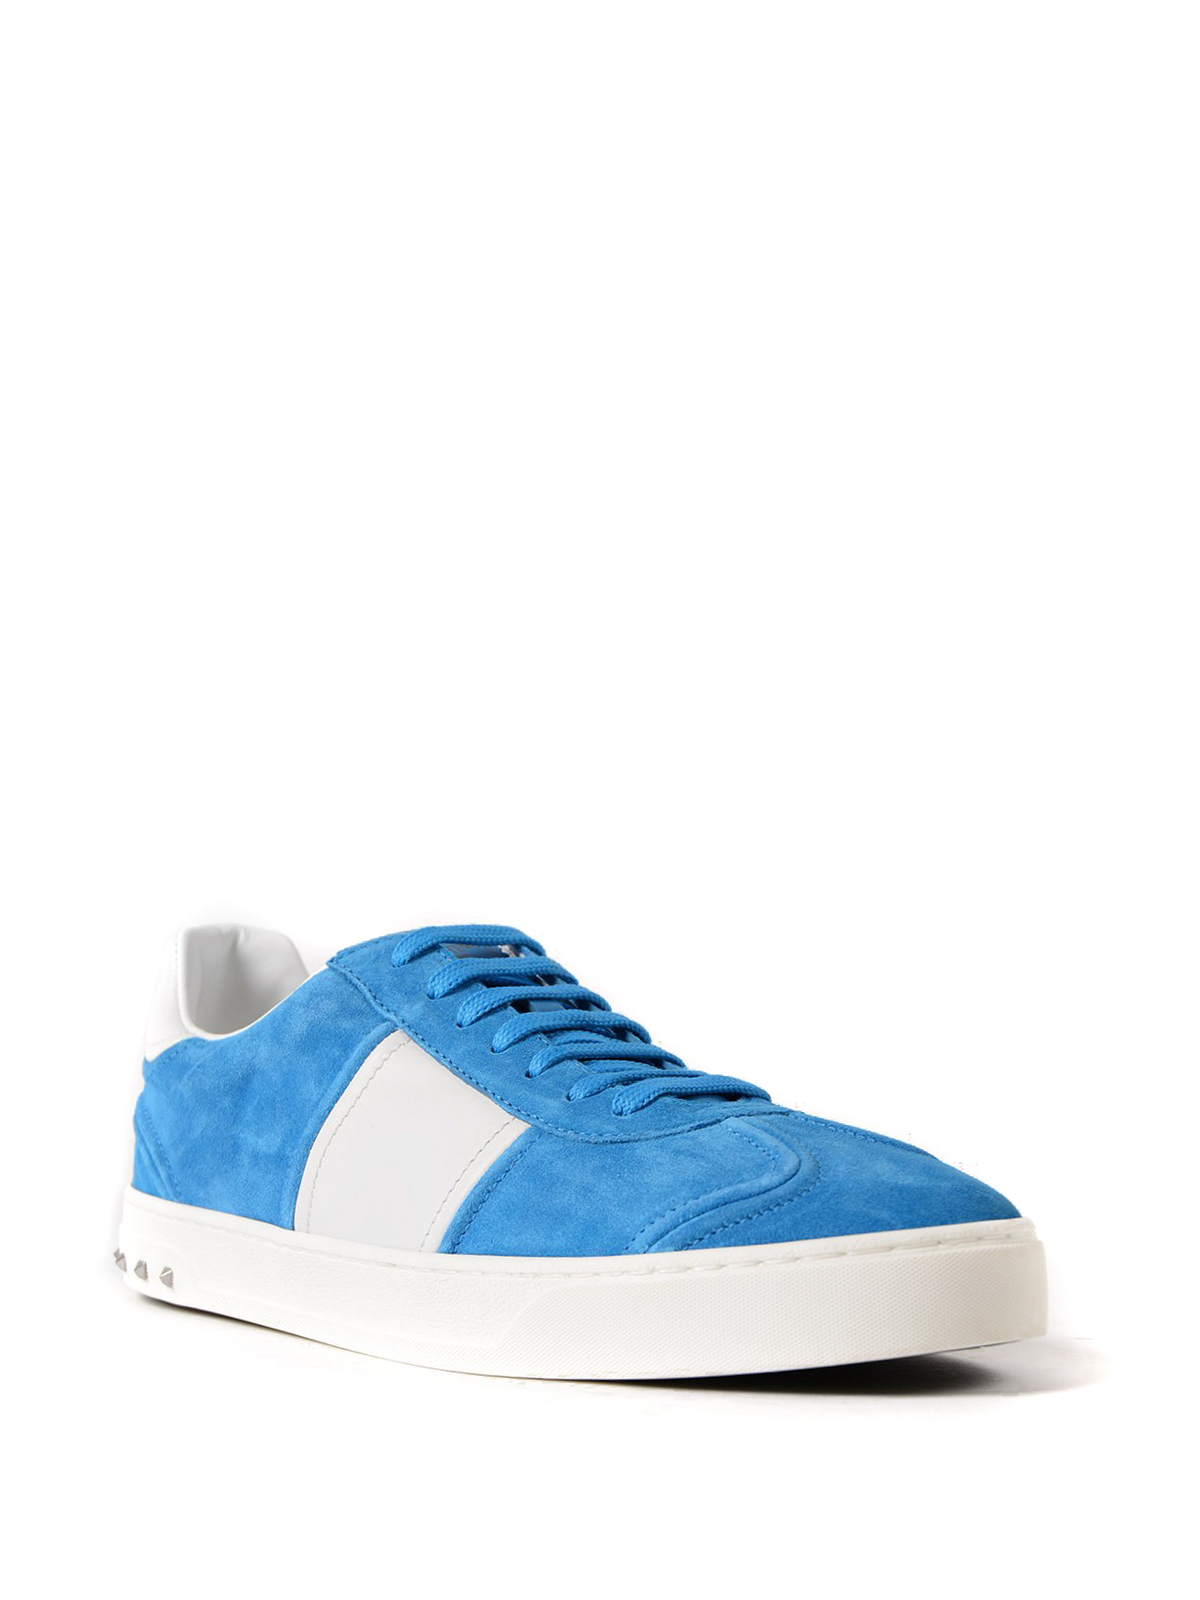 Flycrew light blue suede sneakers 